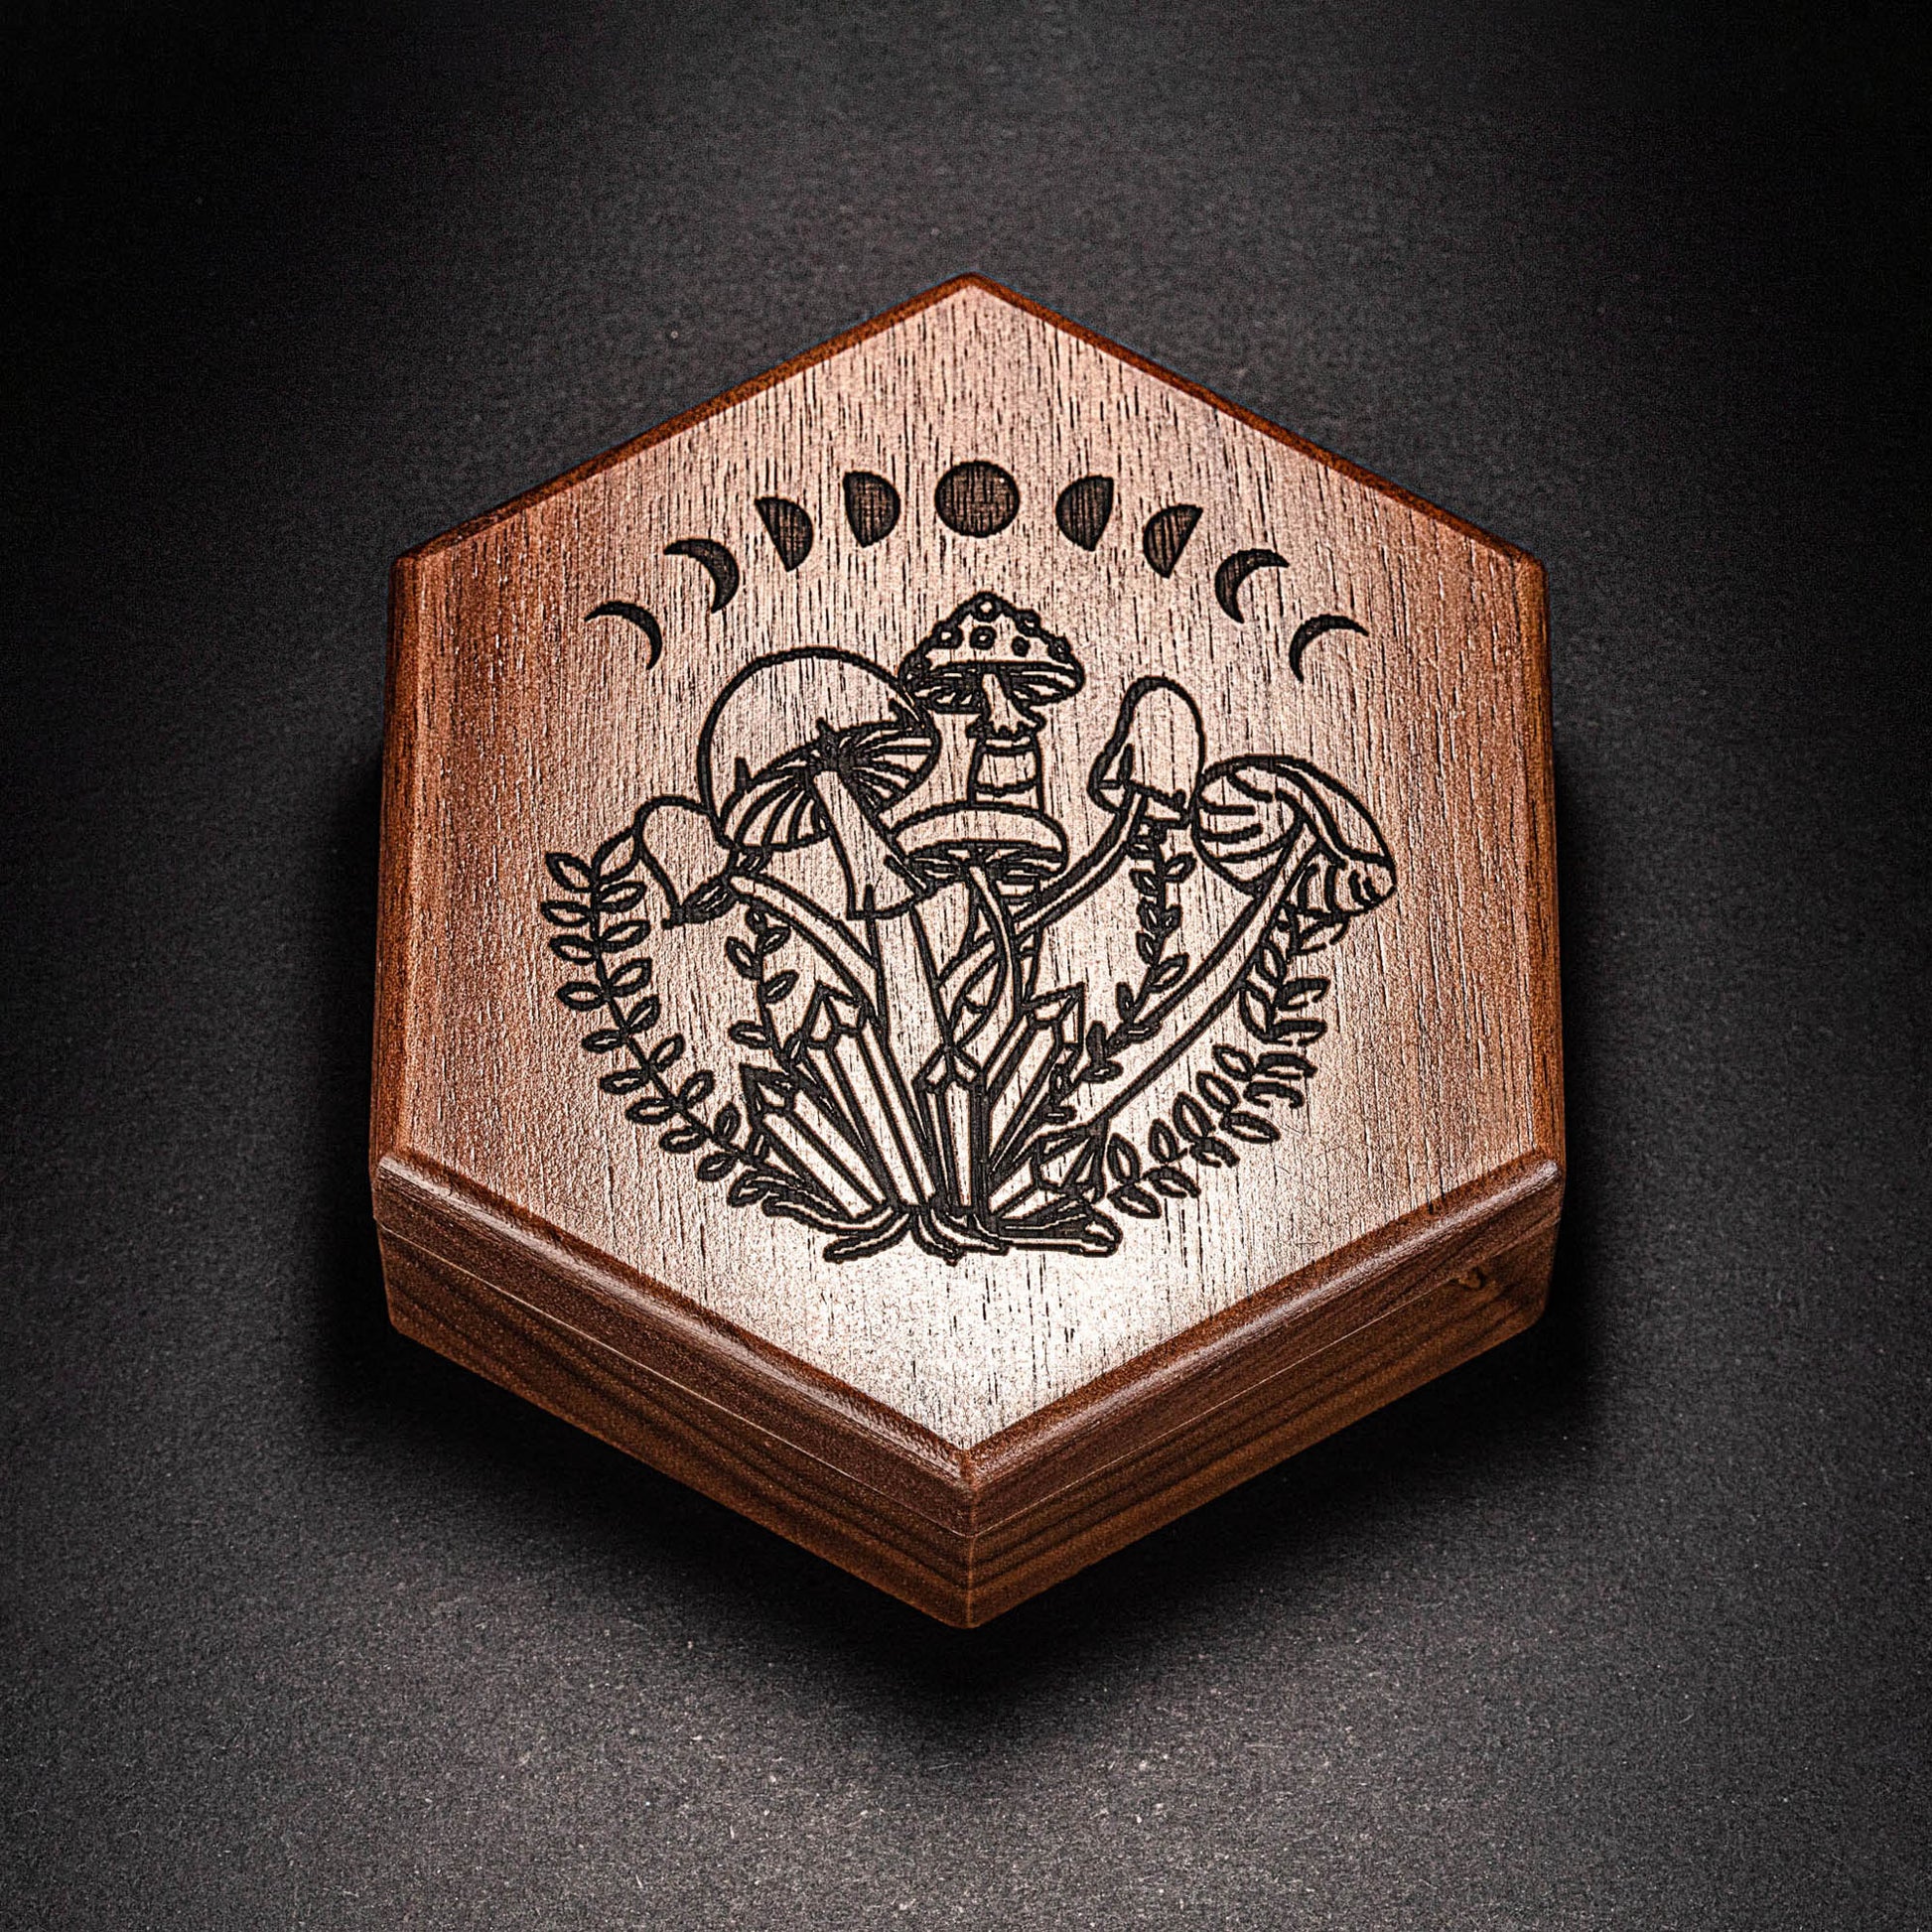 Black Walnut Wood Mushroom Motif DnD D&D Dice Box - CrystalMaggie